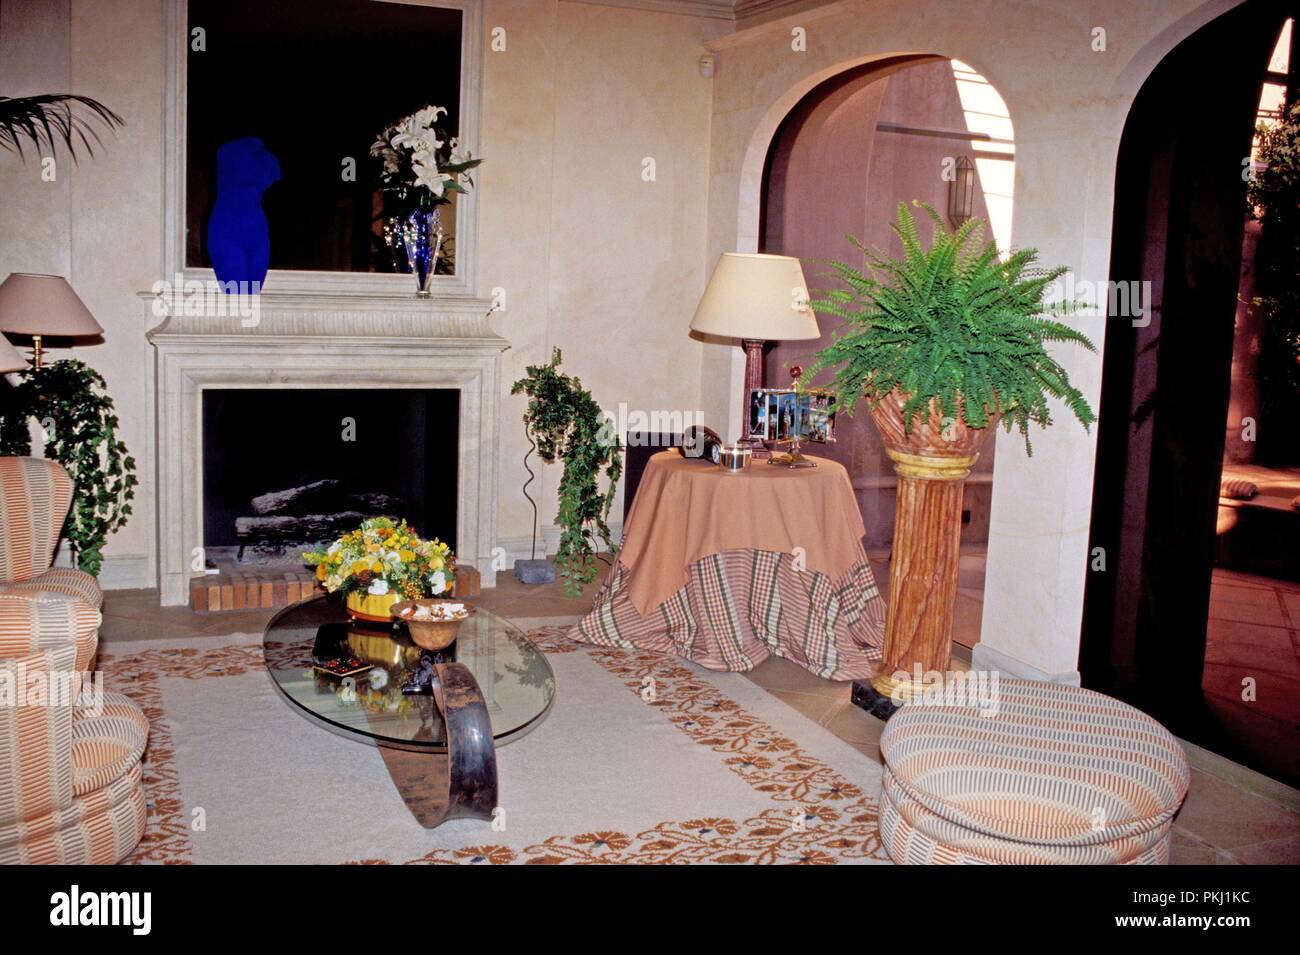 Wohnzimmer von Gunter Sachs Anwesen in St. Tropez, Frankreich 2004. Living room of Gunter Sachs estate in St. Tropez, France 2004. Stock Photo